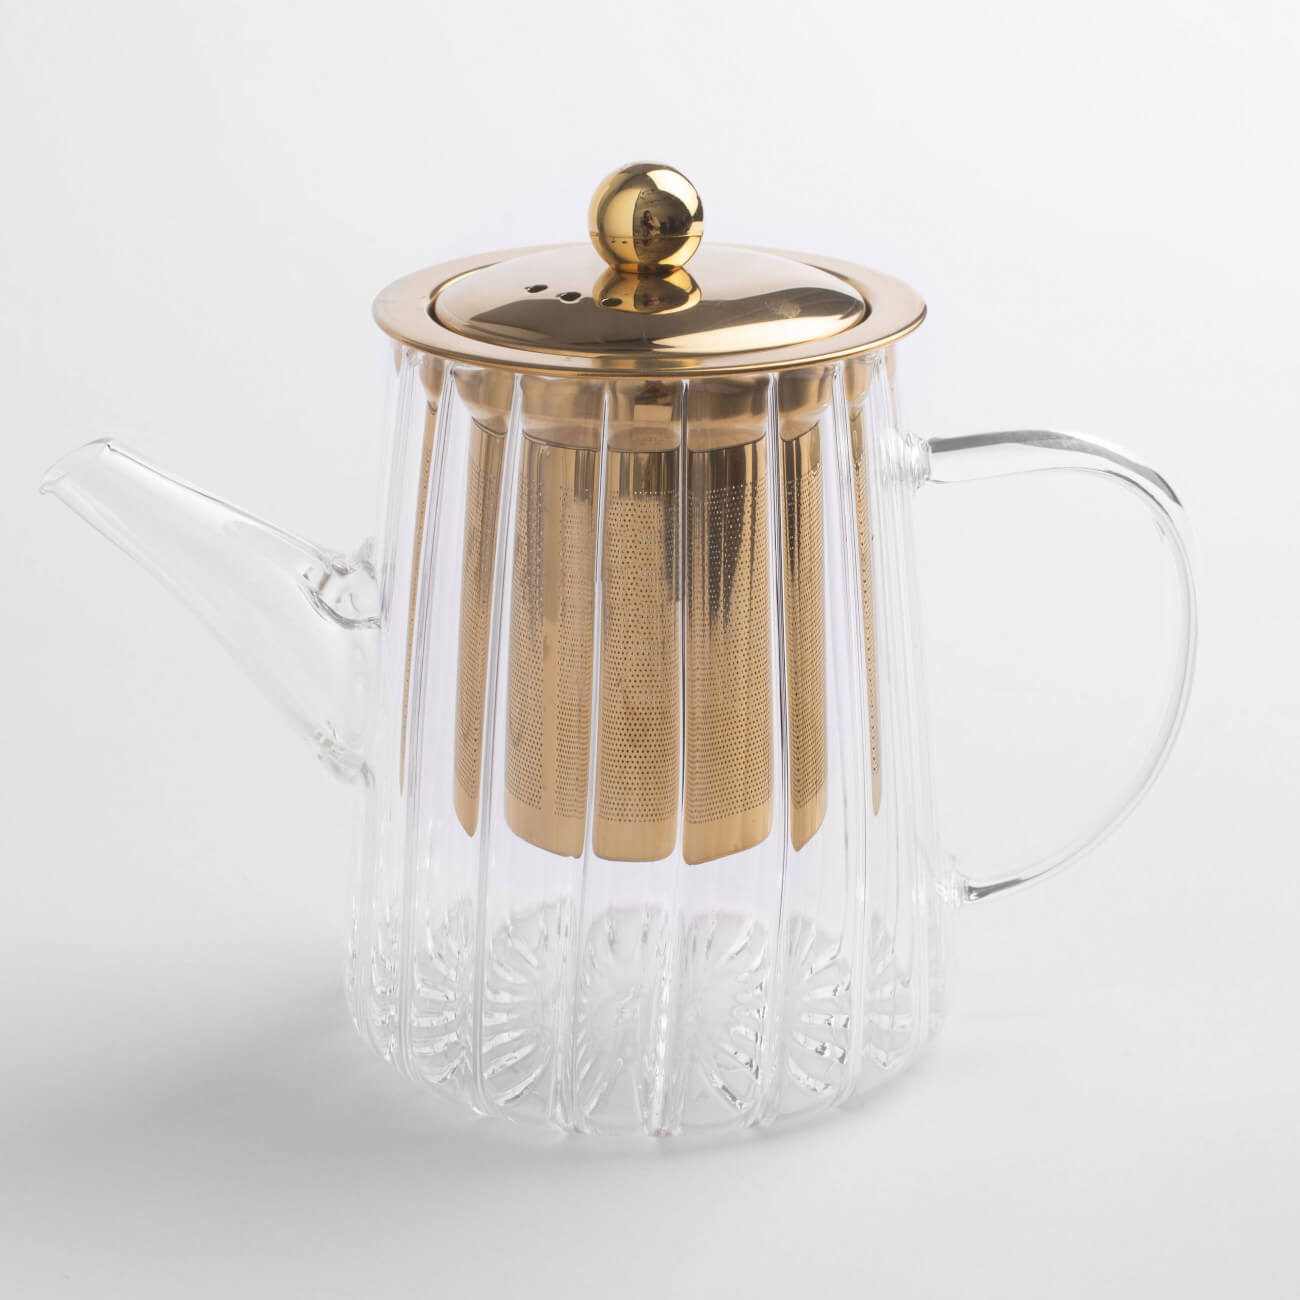 Чайник заварочный, 600 мл, стекло Б/сталь, золотистый, Camellia gold kuchenland чайник заварочный 900 мл стекло б clear